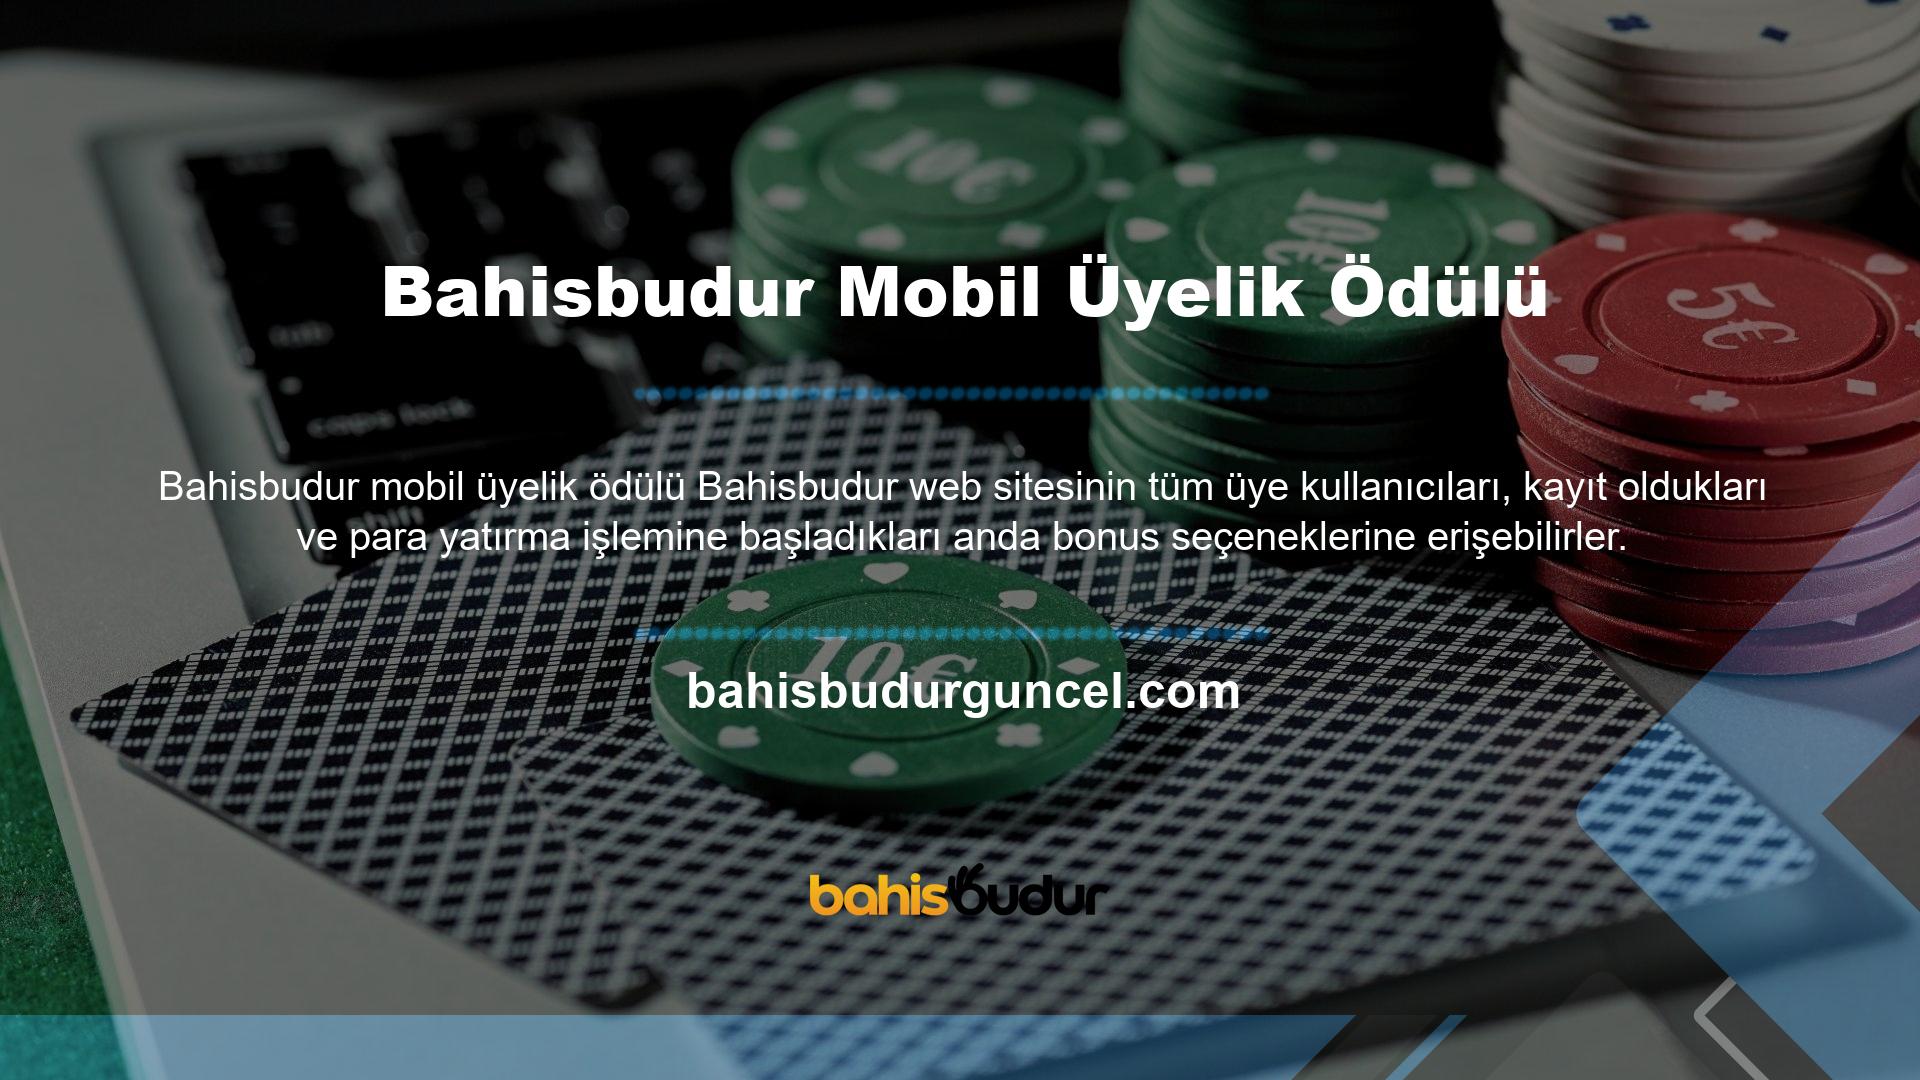 Bahisbudur Mobil Üyelik Ödülleri Canlı Mobil Bahis Borsası üyeleri, para yatırma işlemlerinin güvende olduğunu biliyor ve bonuslarını kolayca talep edebiliyorlar